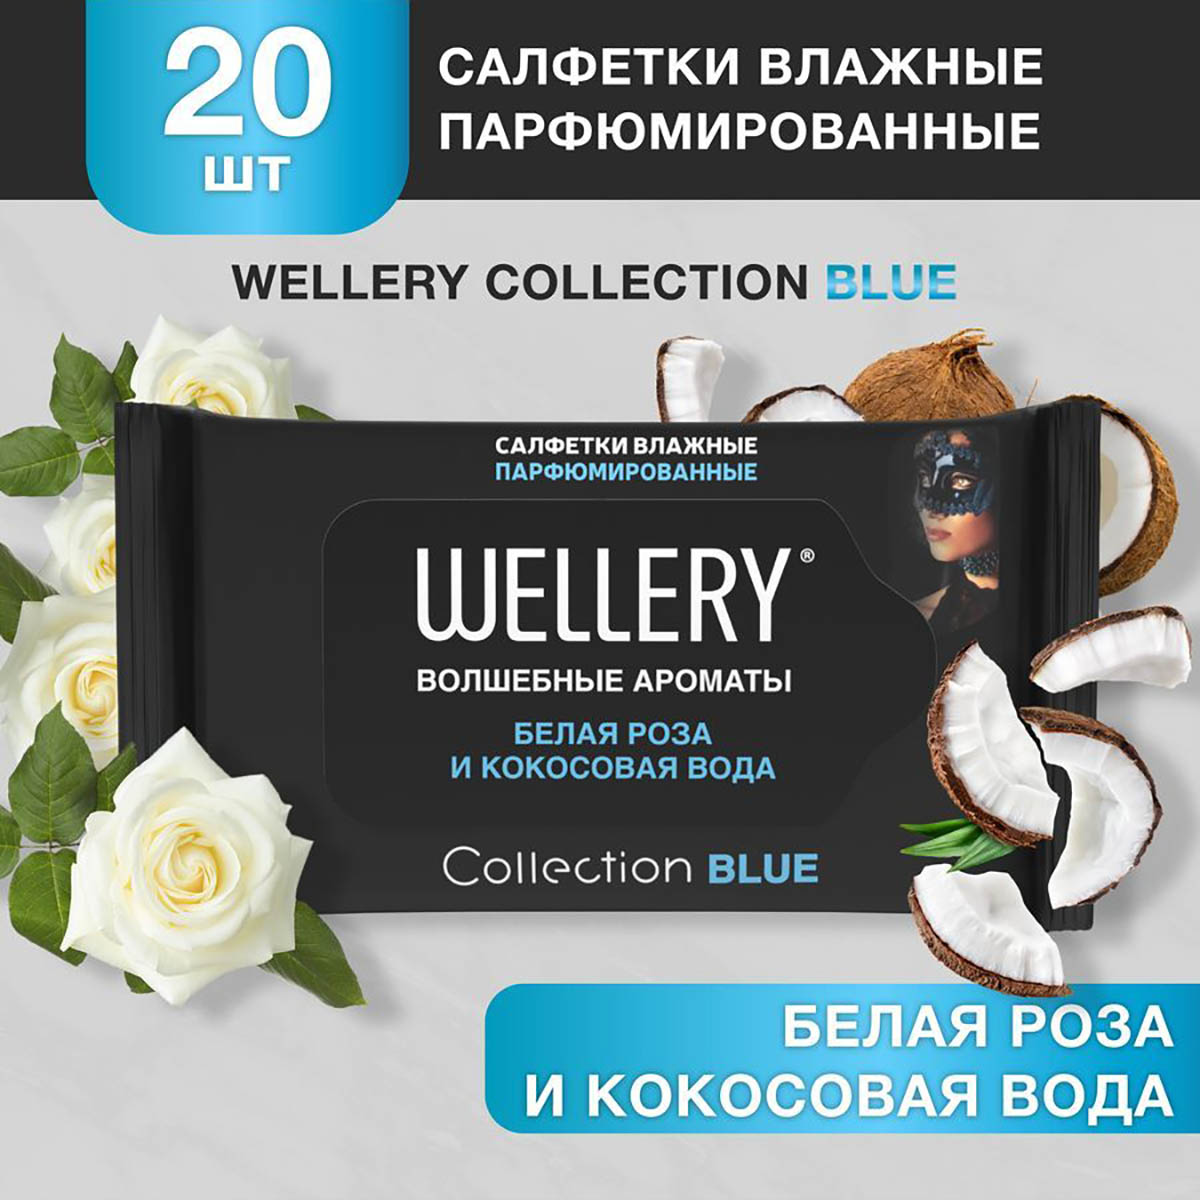 Салфетки влажные Wellery Collection Blue универсальные, белая роза, кокосовая вода 20 шт белая роза роман